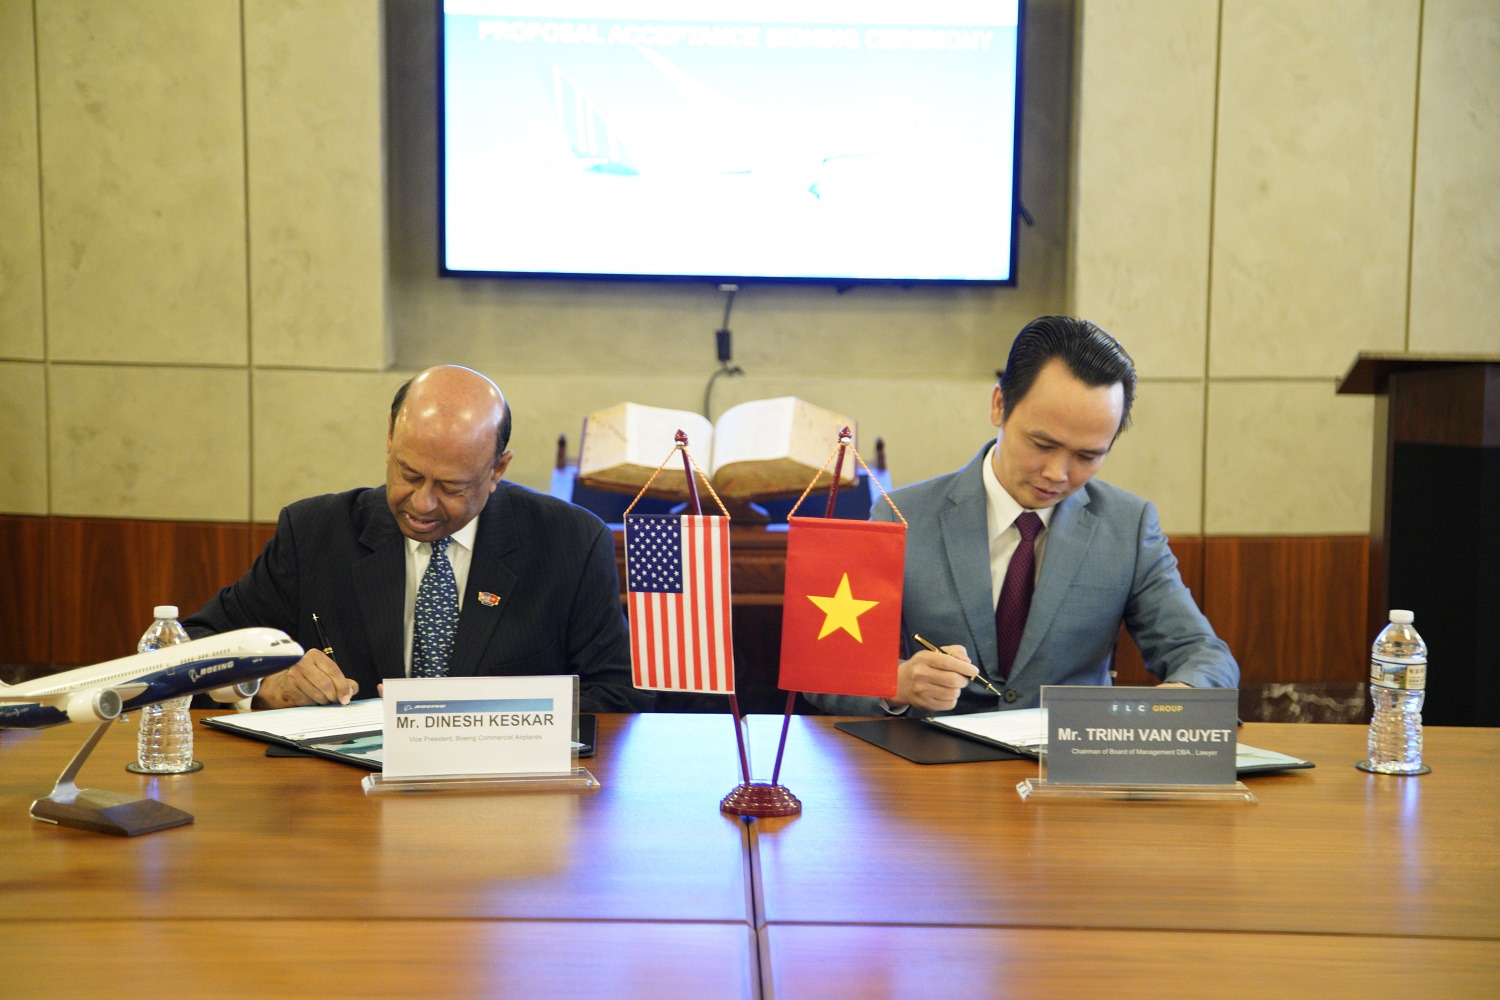 Chủ tịch Tập đoàn FLC Trịnh Văn Quyết (phải) và Phó Chủ tịch phụ trách kinh doanh khu vực châu Á – Thái Bình Dương và Ấn độ của Boeing Dinesh Keskar (trái) thực hiện lễ ký kế